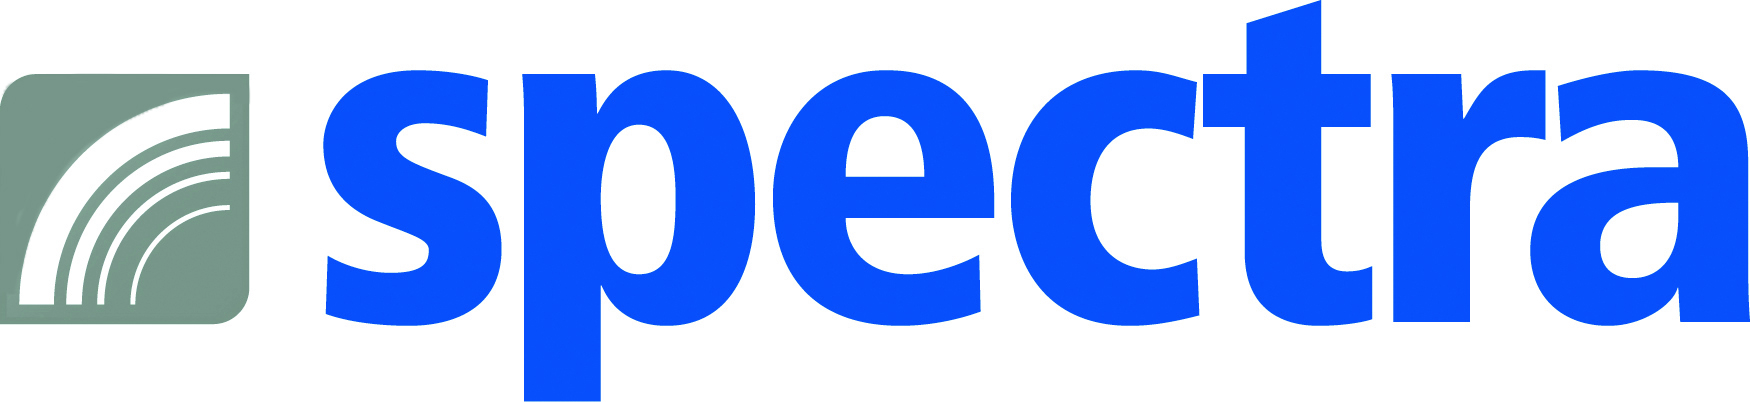 Spectra GmbH & Co. KG_logo